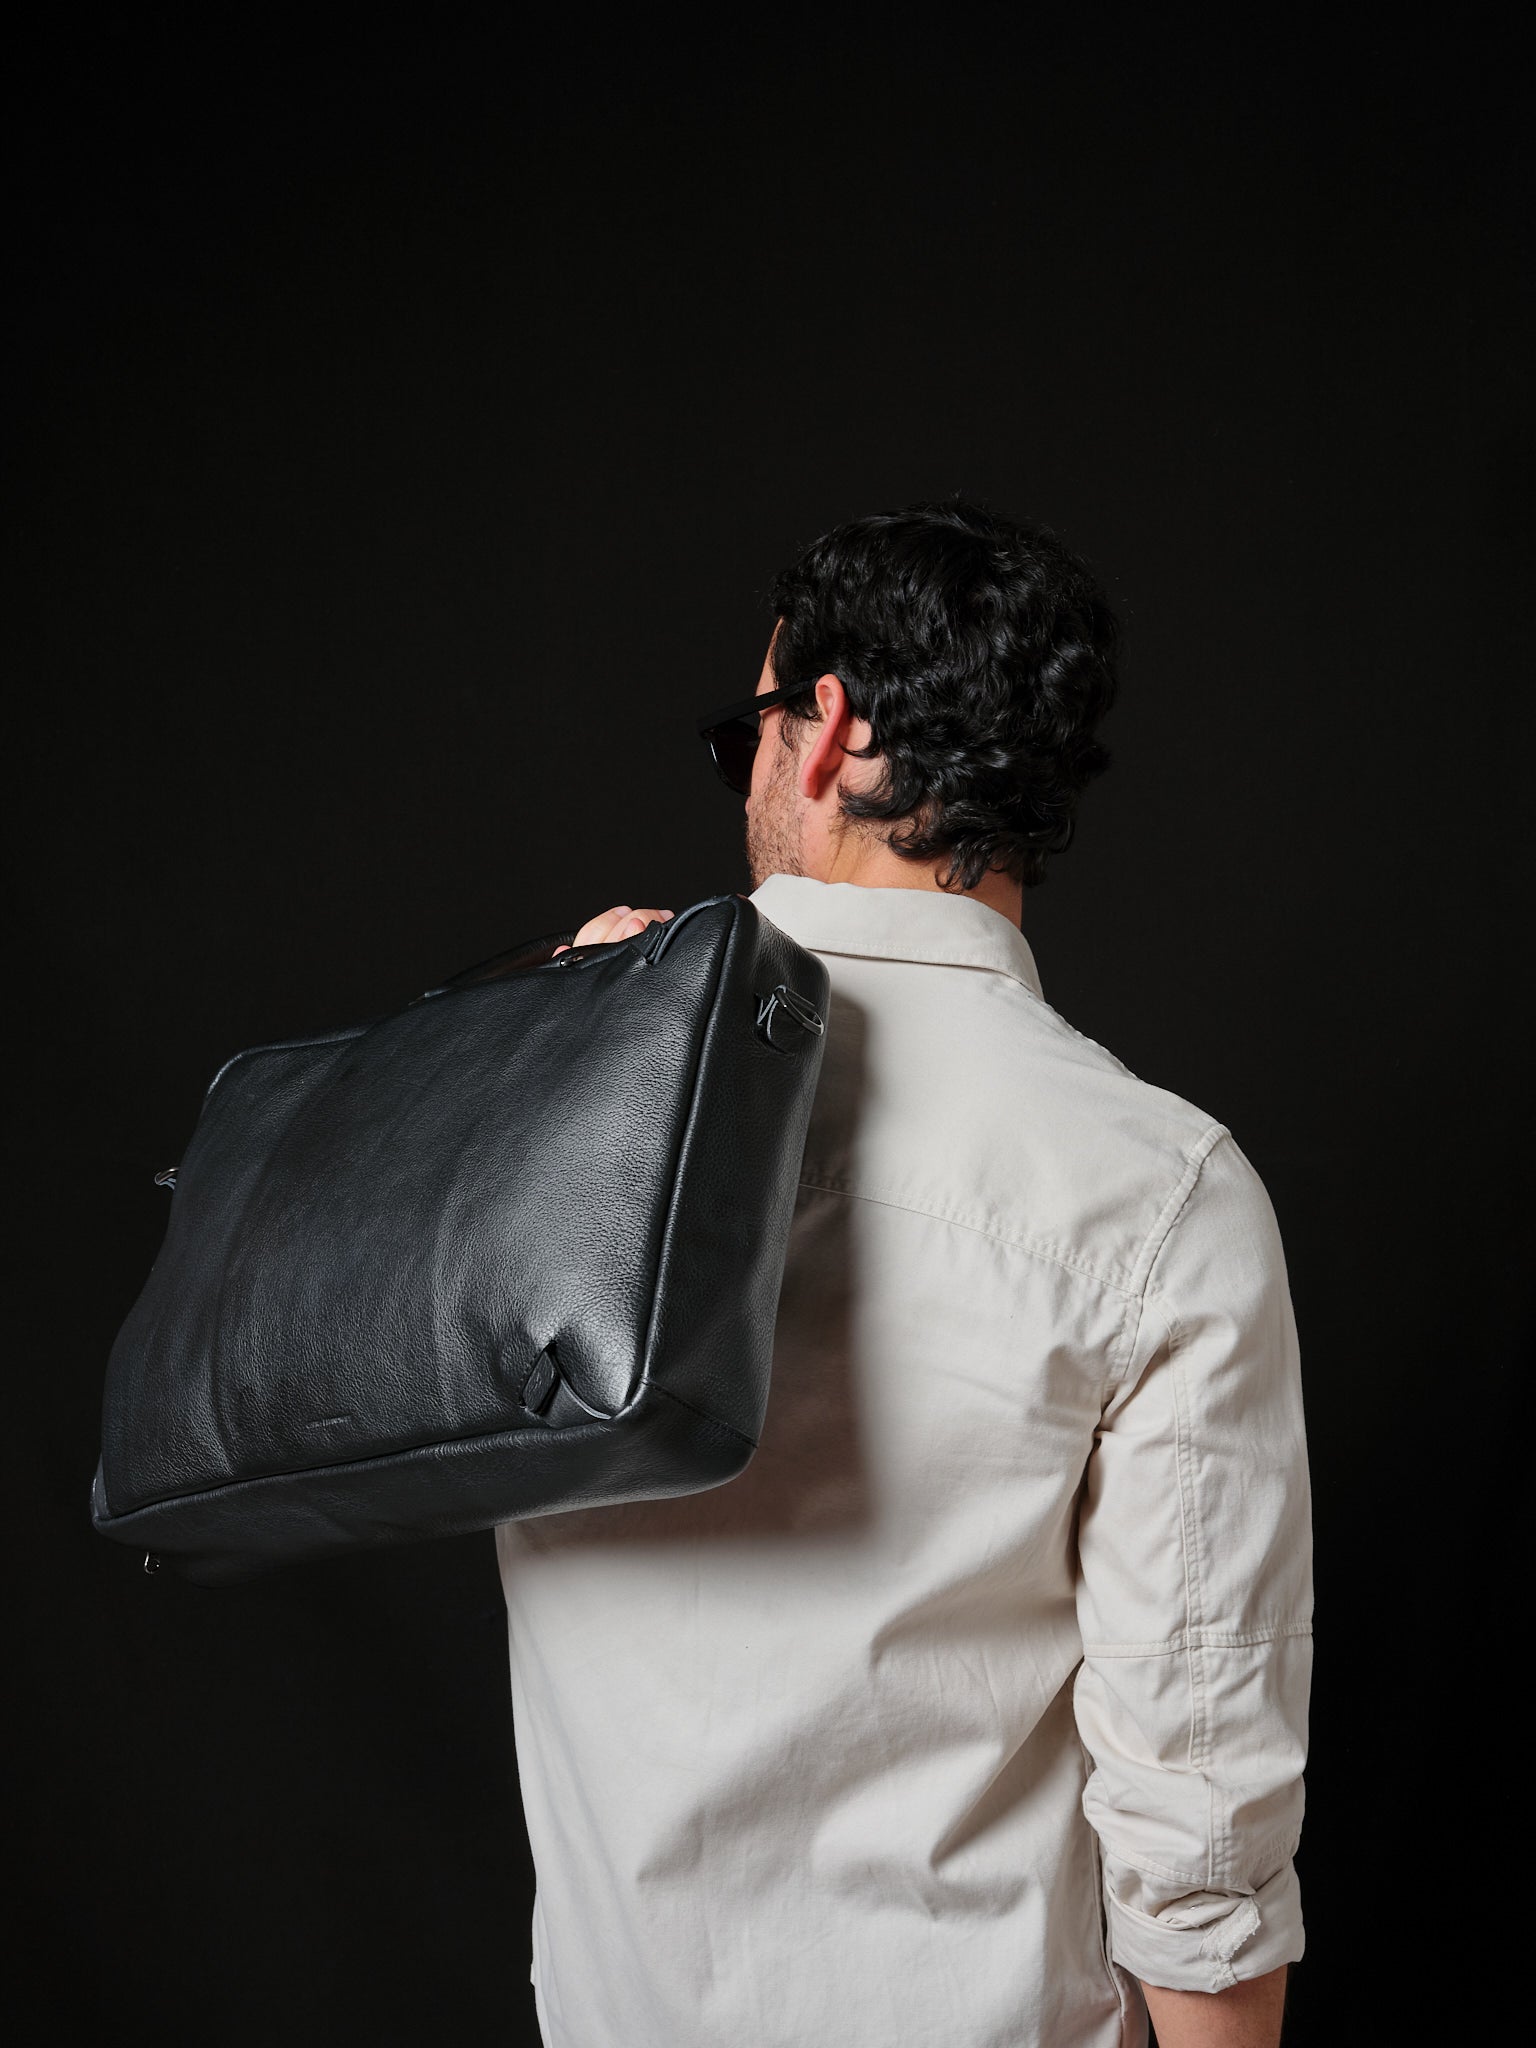 Designer Backpacks for Men. Backpack Briefcase Combo Black by Capra Leather